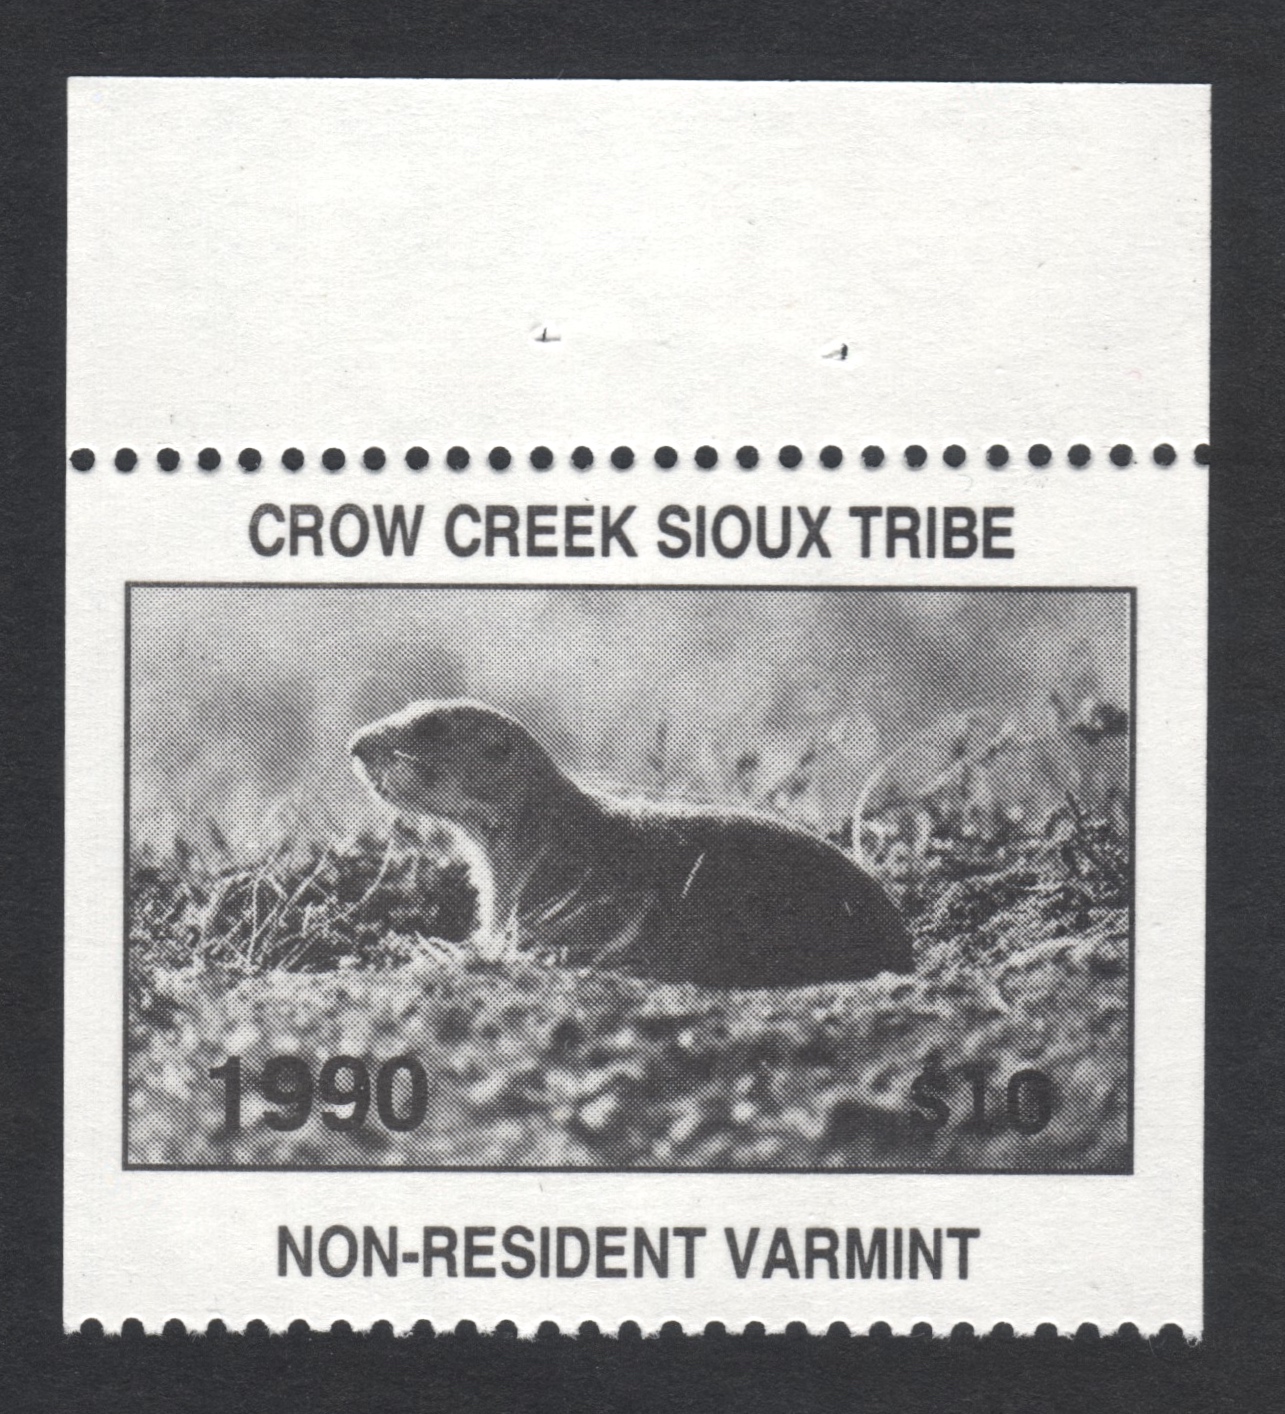 1990 Error Crow Creek NR Varmint Missing Serial Number